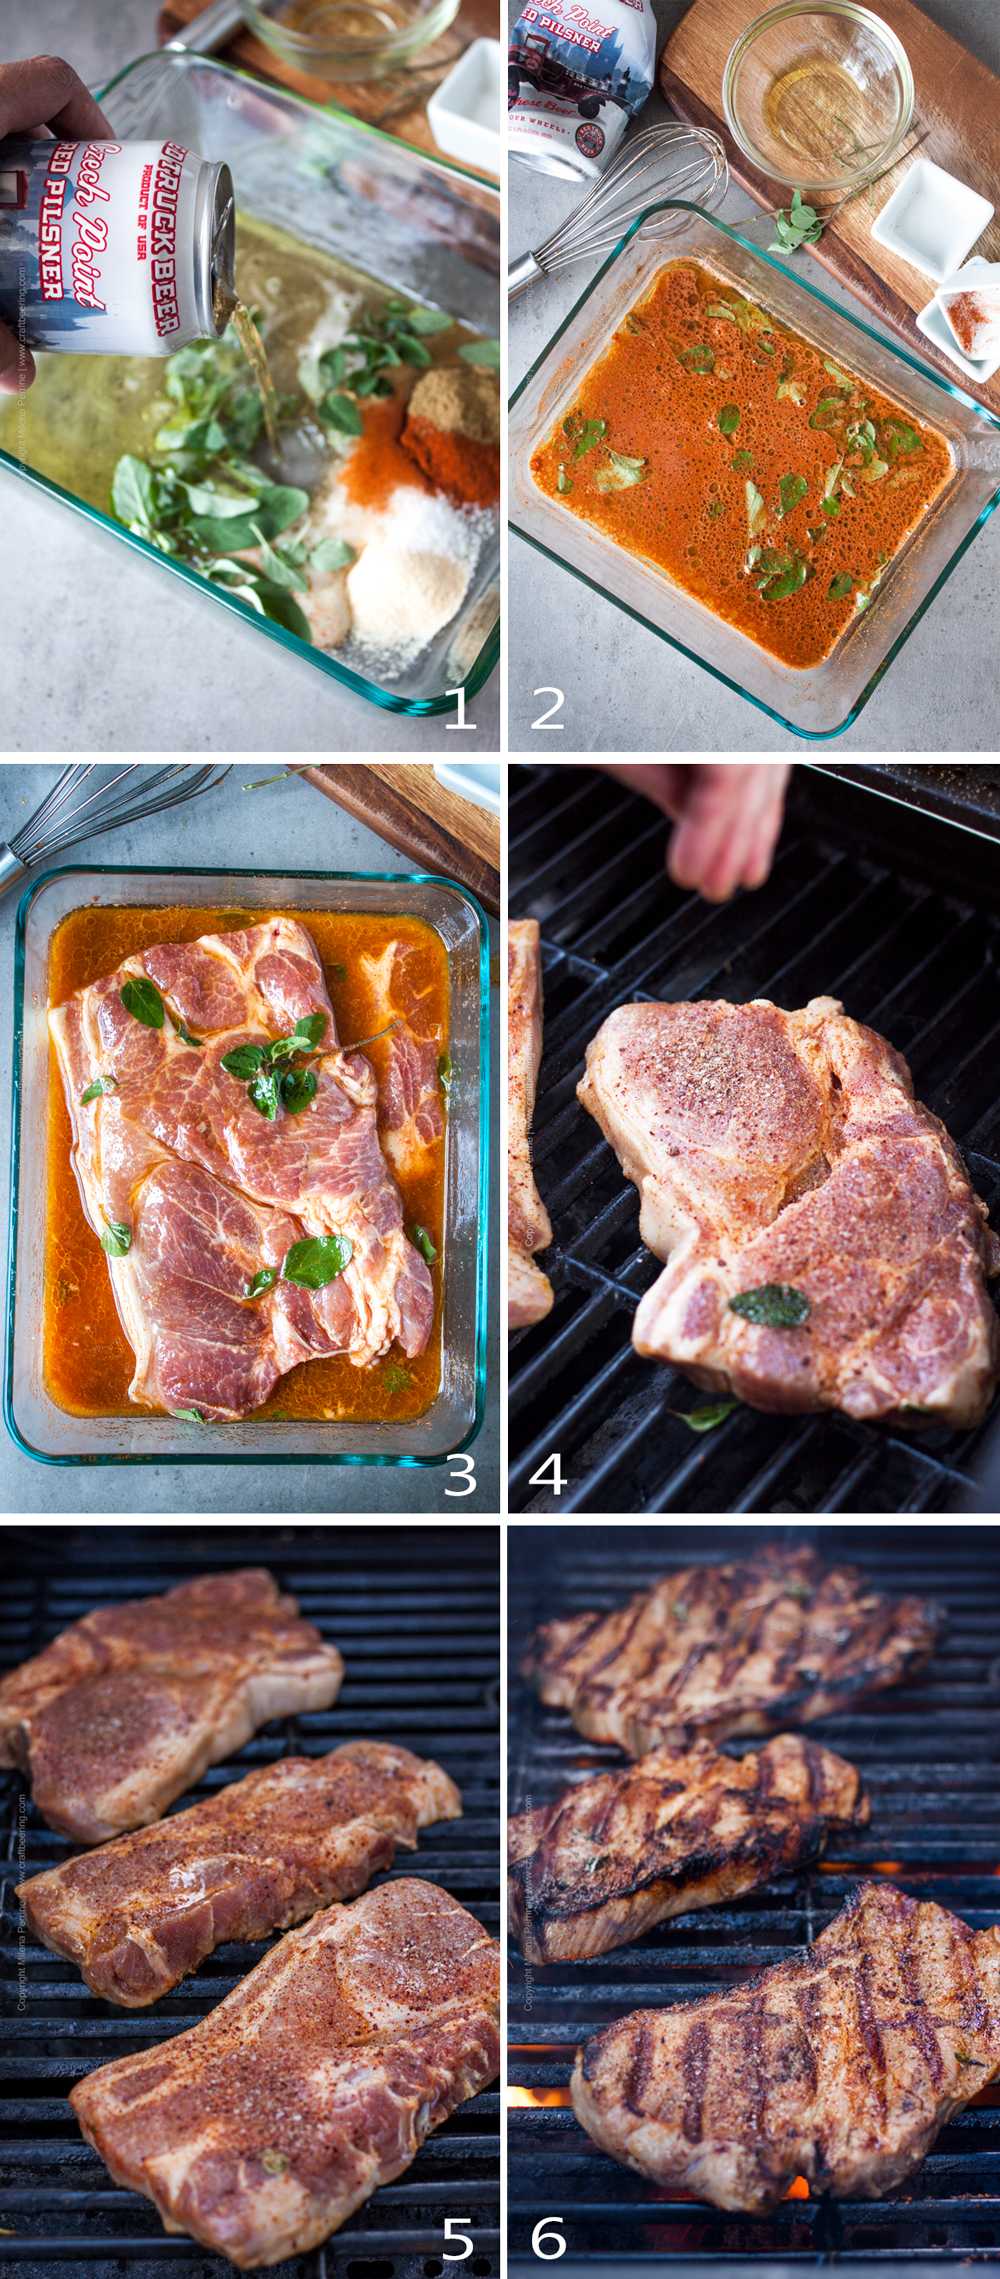 Hoe je een schouderlapje van varkensvlees op de grill bakt - proces foto's.